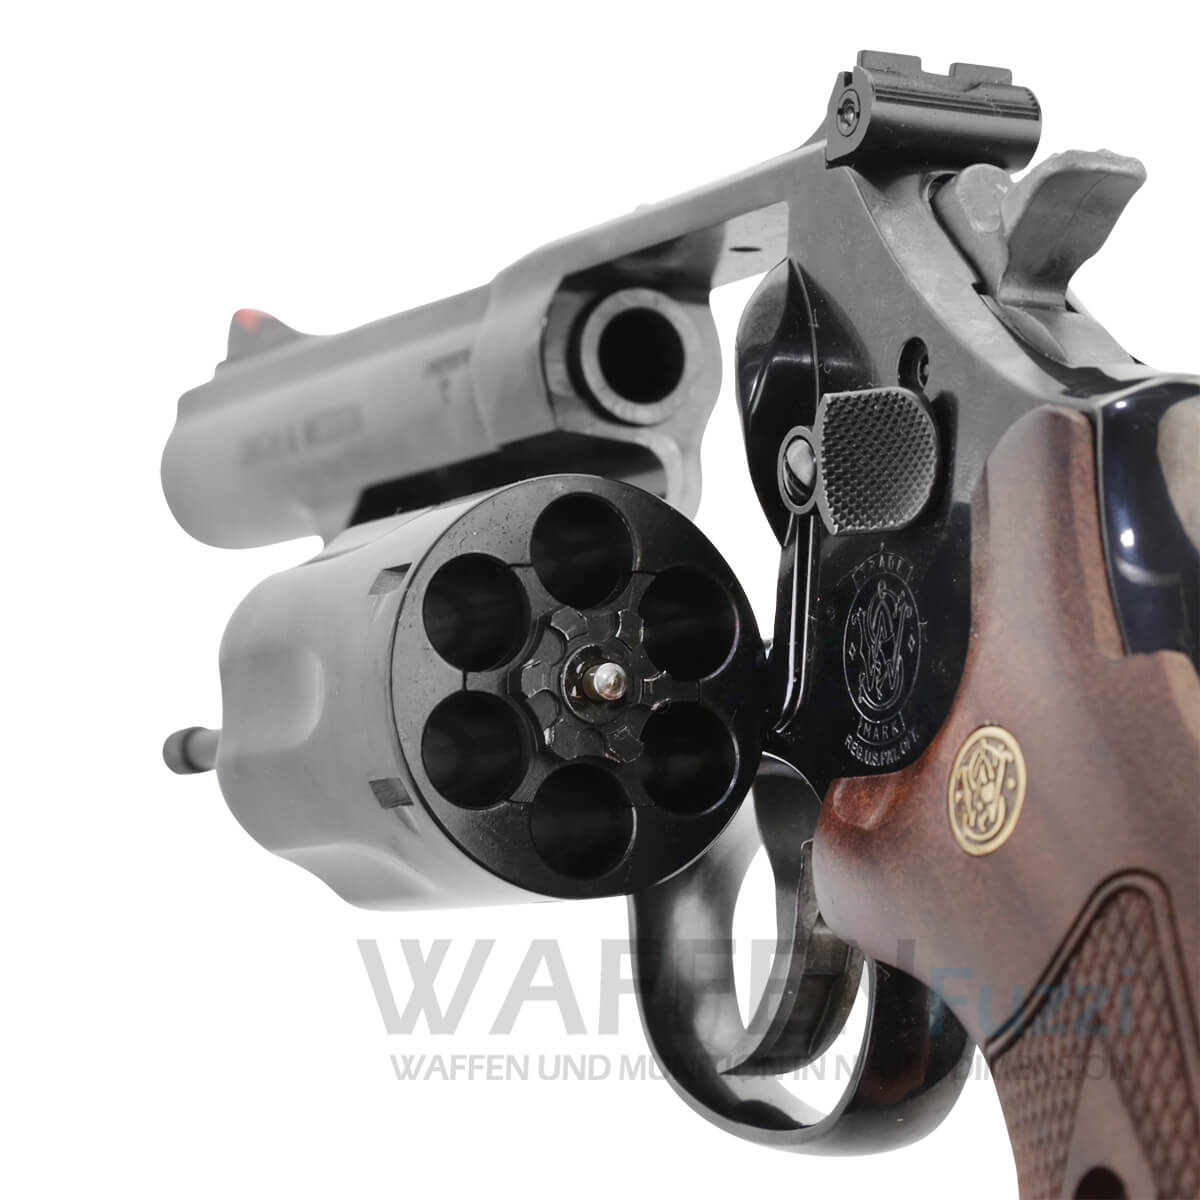 Smith&Wesson Revolver Waffen und Munition günstig bei Waffenfuzzi.de shoppen 